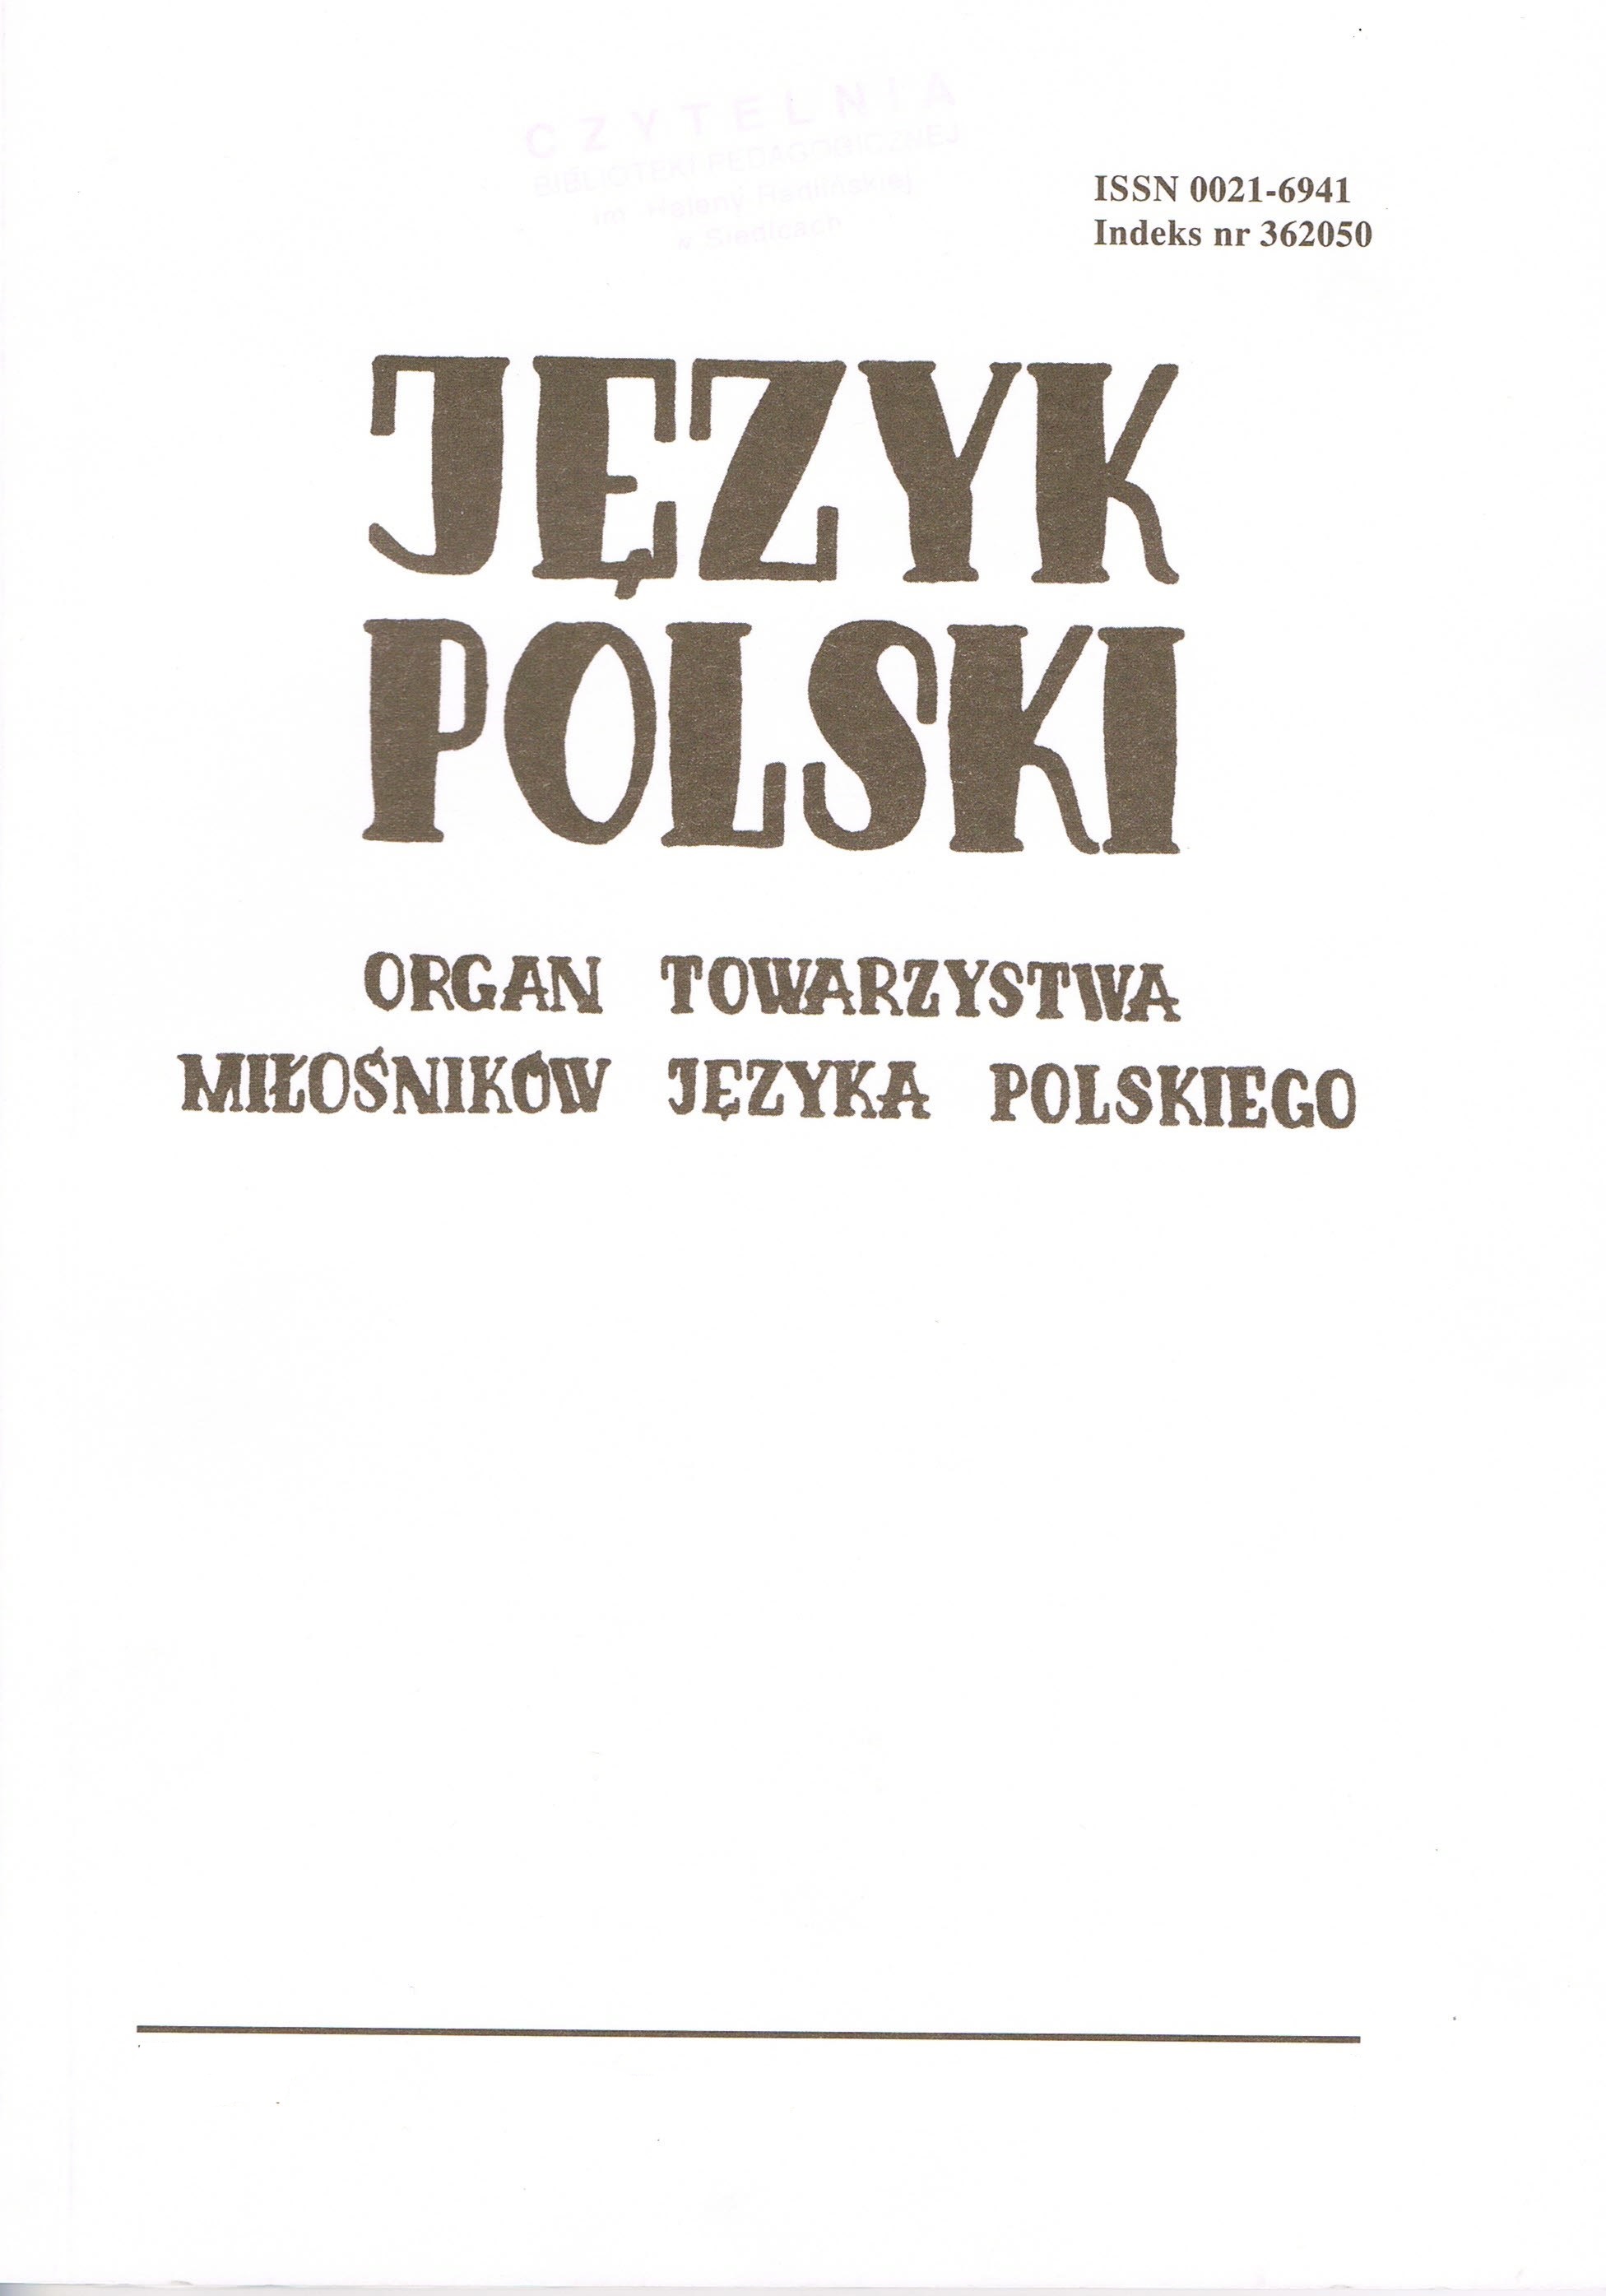 "Mocarz ducha zamieszkał w niebie". Ornamental and euphemistic periphrases in press Cover Image